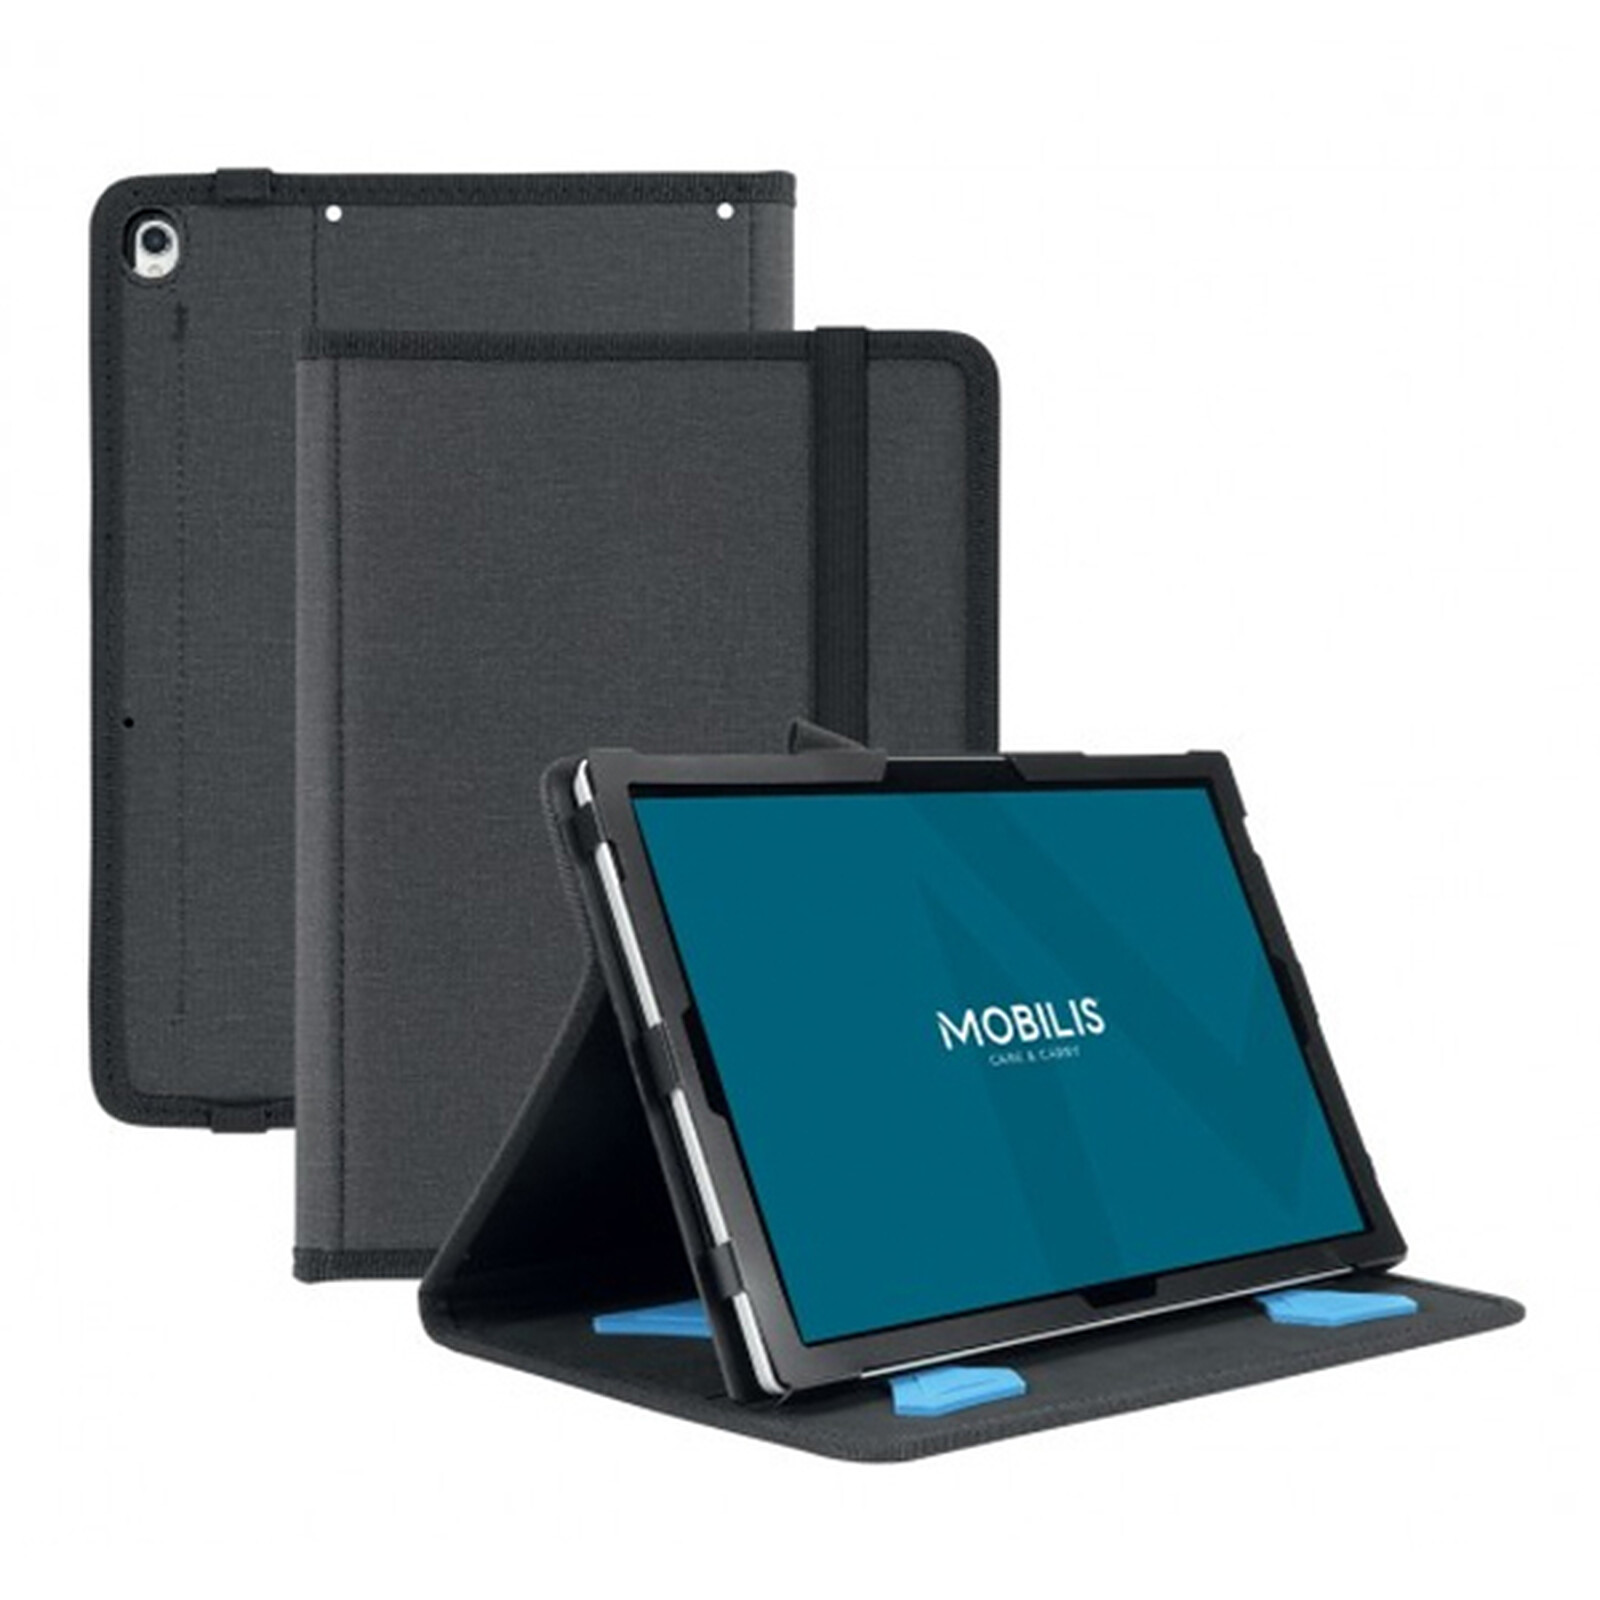 Mobilis Active Pack Case pour iPad mini (2021) - Noir - Etui tablette -  Garantie 3 ans LDLC